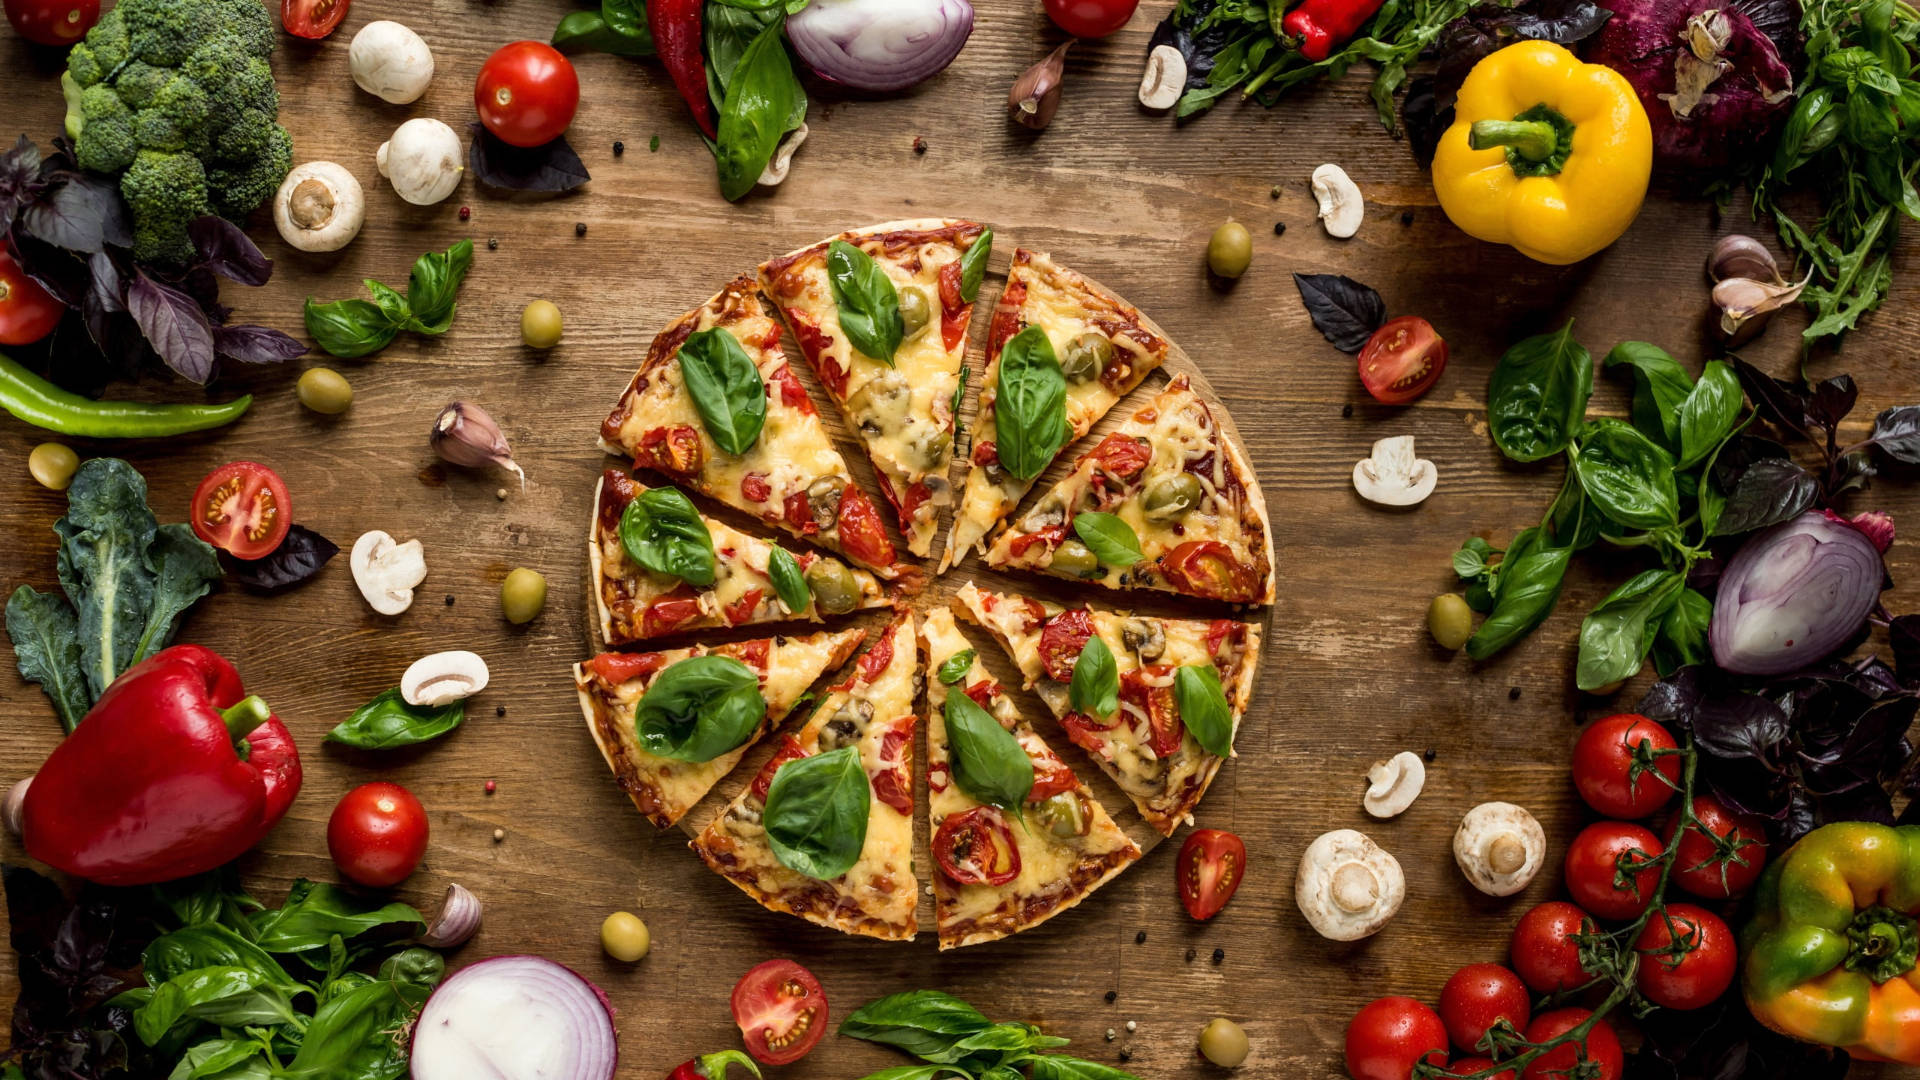 Hemmagjordgrönsakspizza. Wallpaper